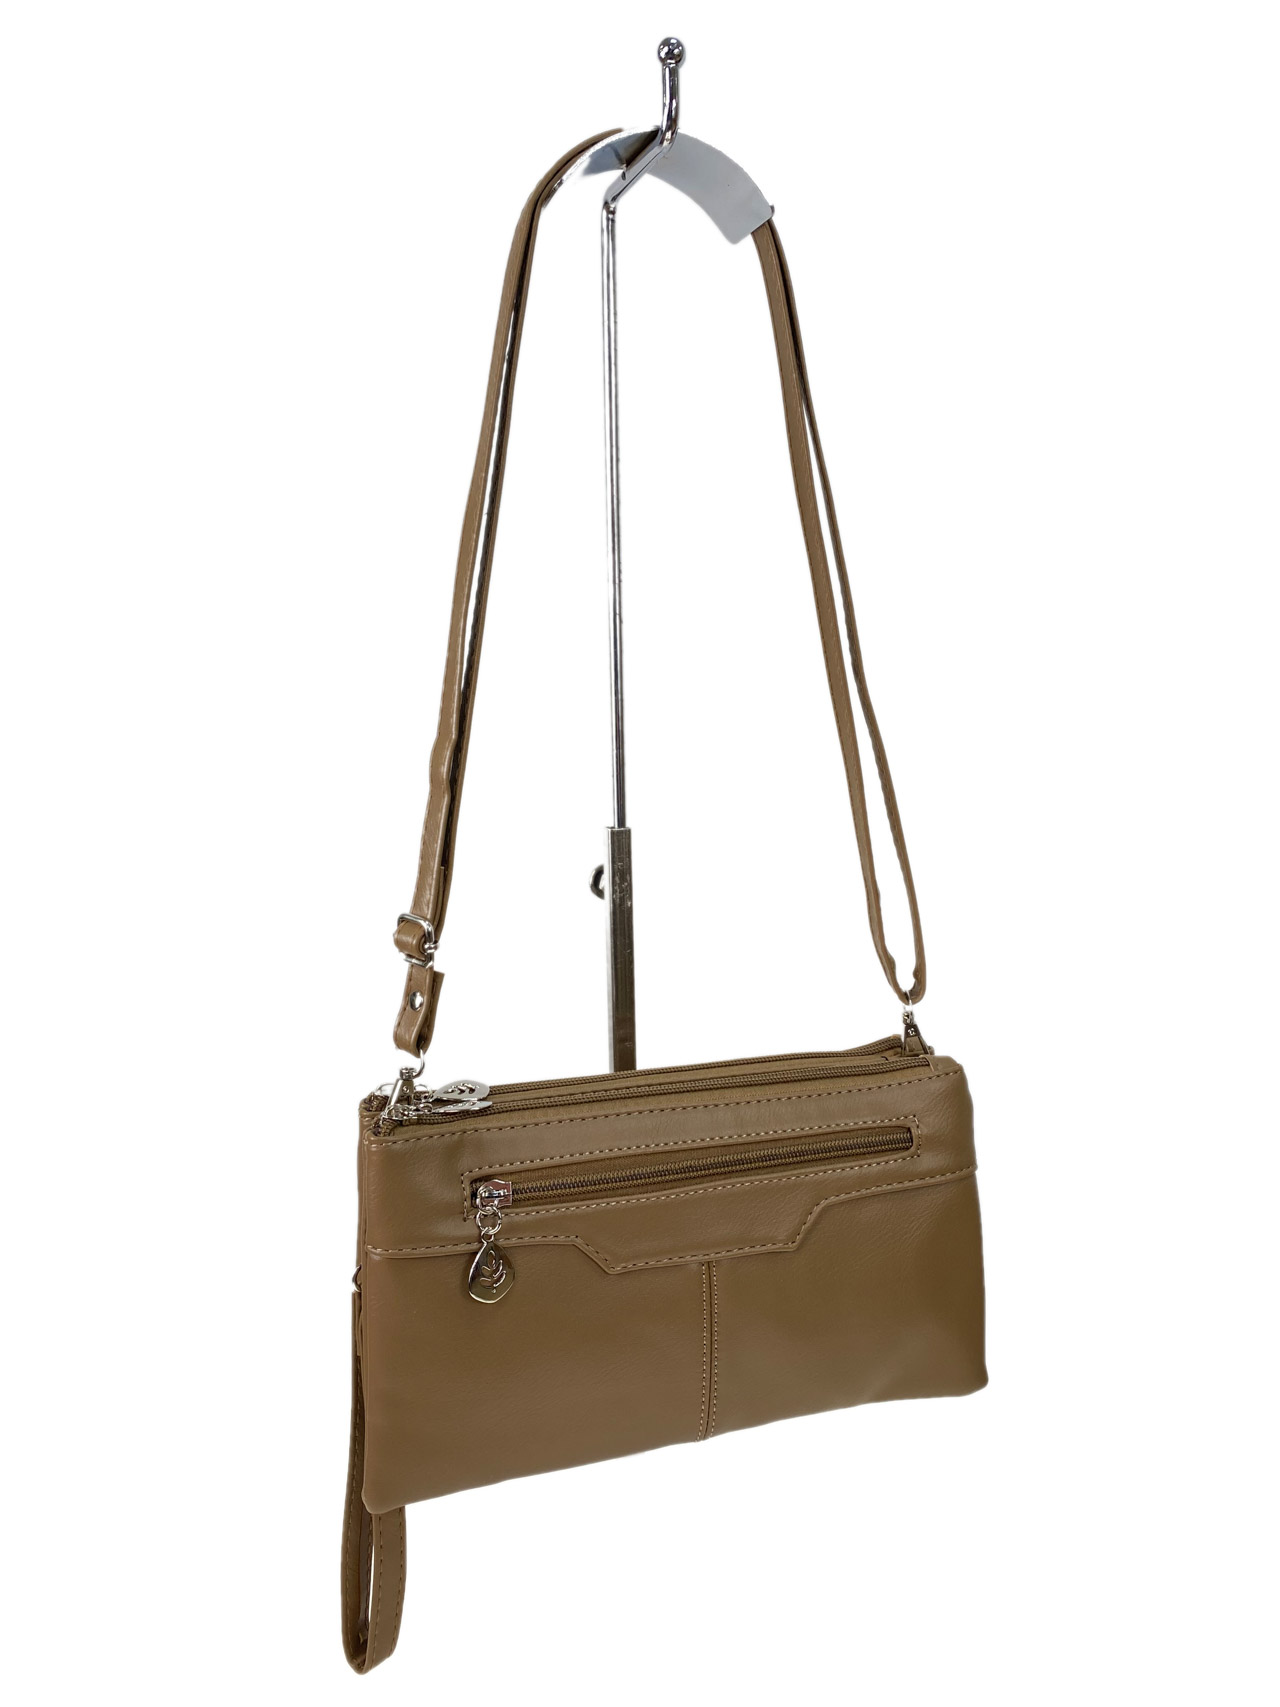 Женская сумка клатч из искусственной кожи, цвет бежево-коричневый